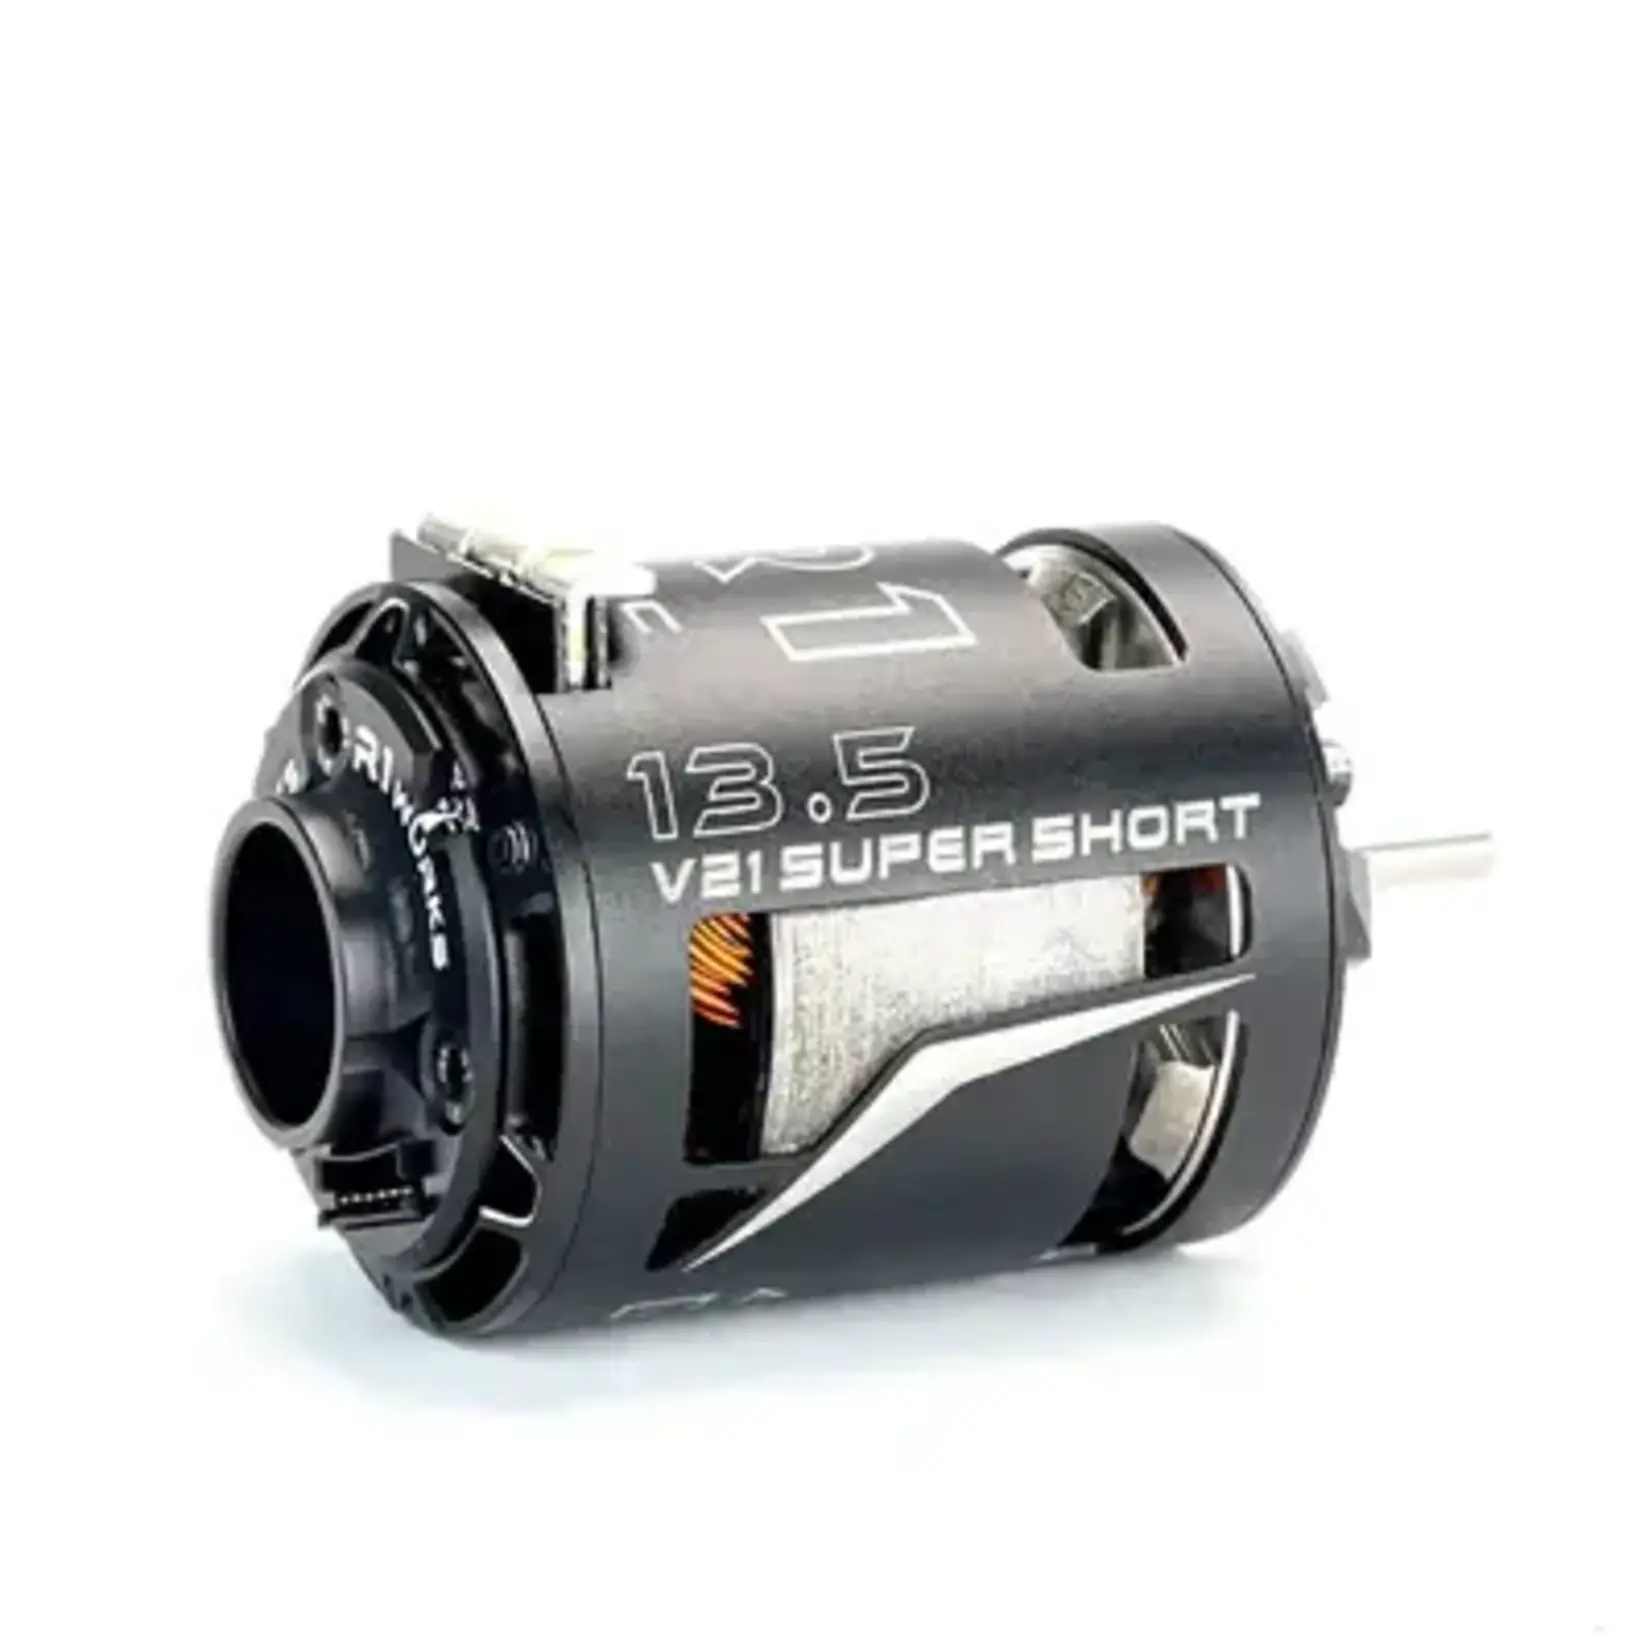 R1 R1020111-3 R1 13.5 V21 Super Short Motor ROAR 020111 - Hand Picked+Aligned Sensor